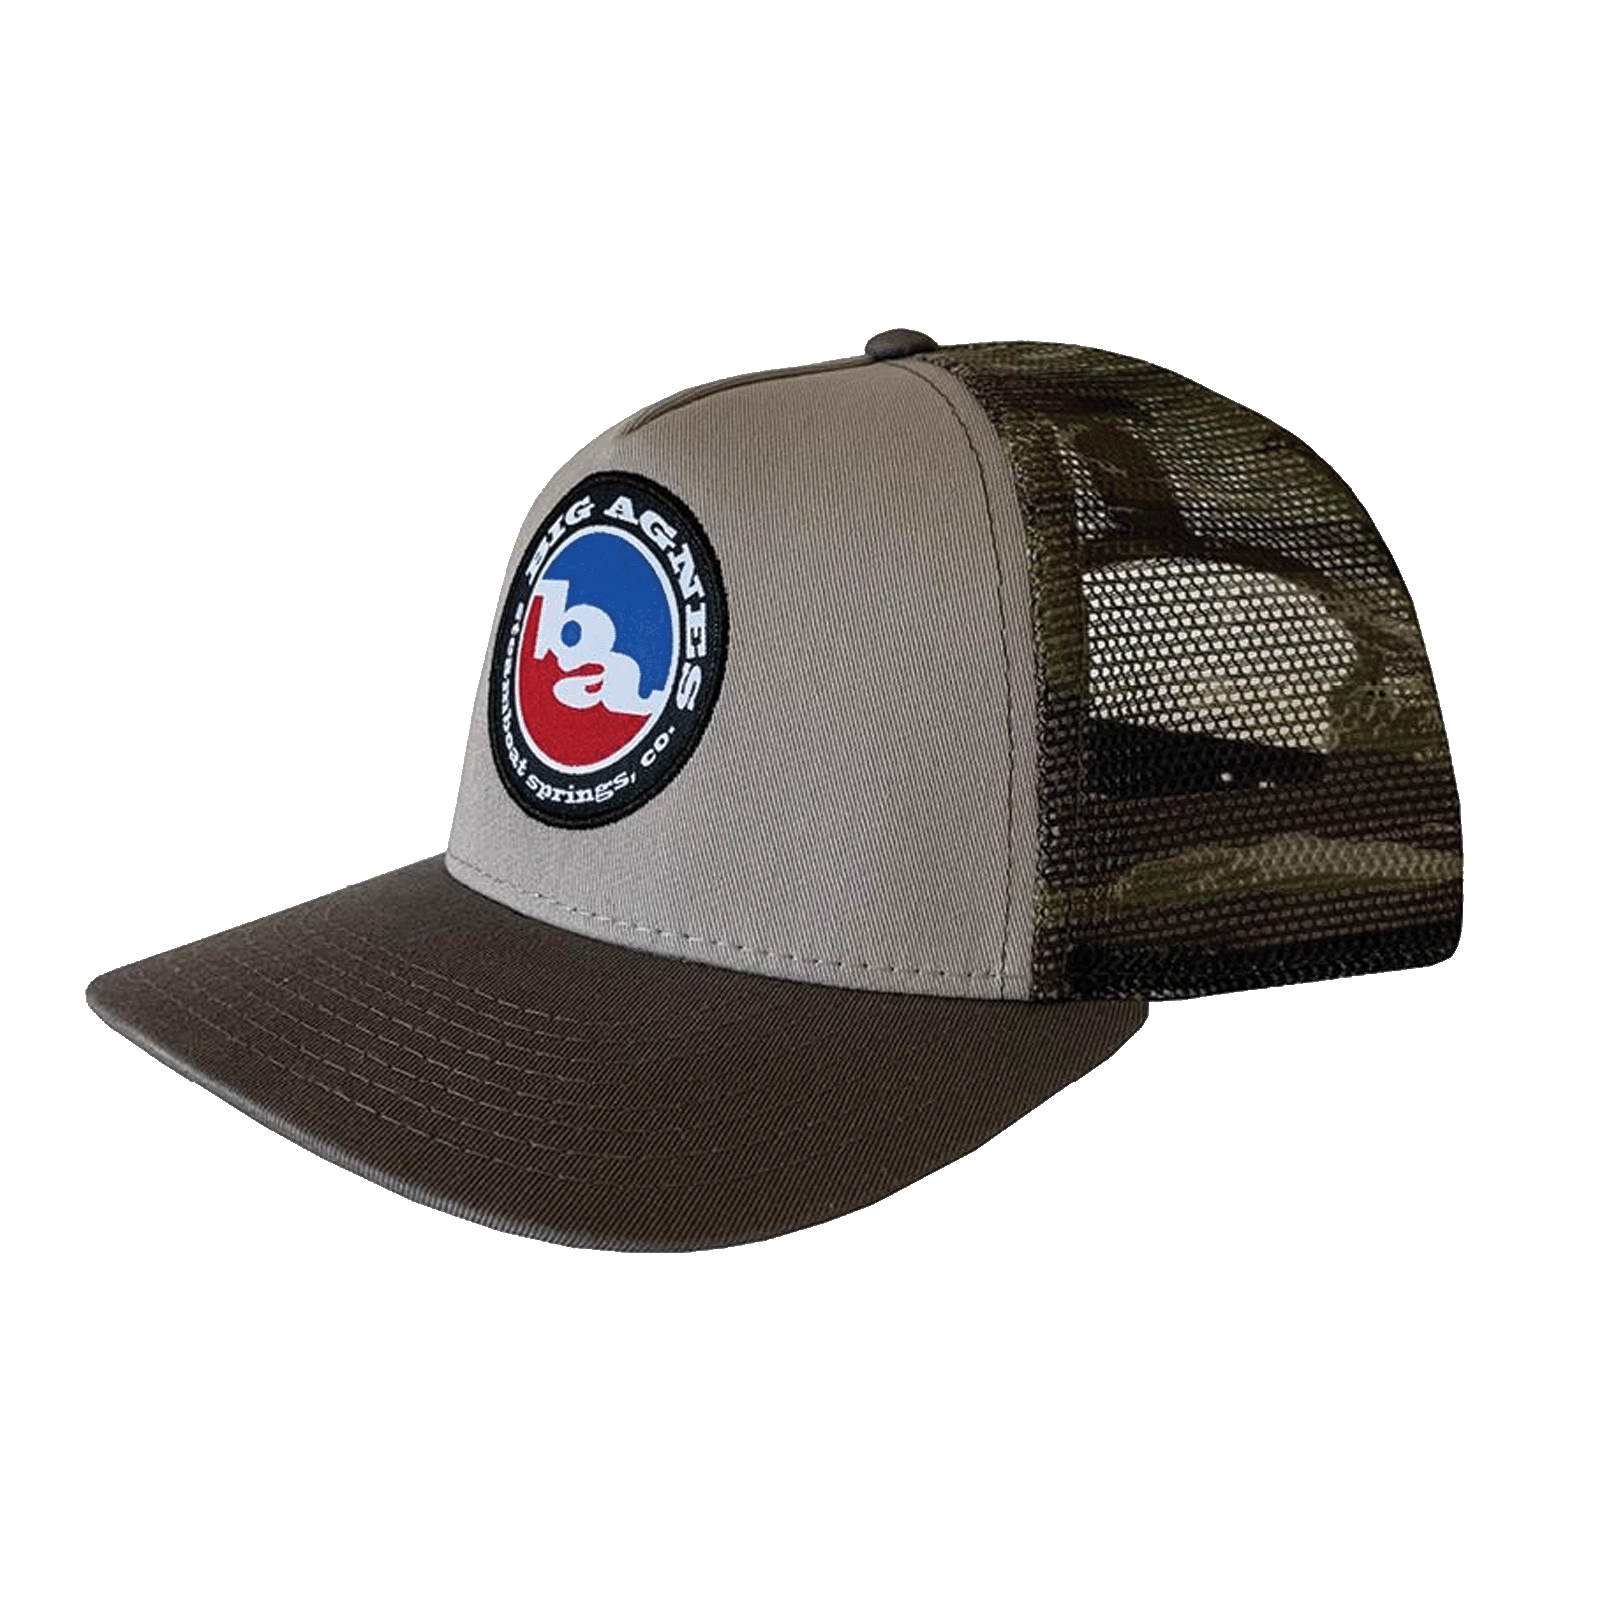 Big Agnes Classic Logo Trucker Hat